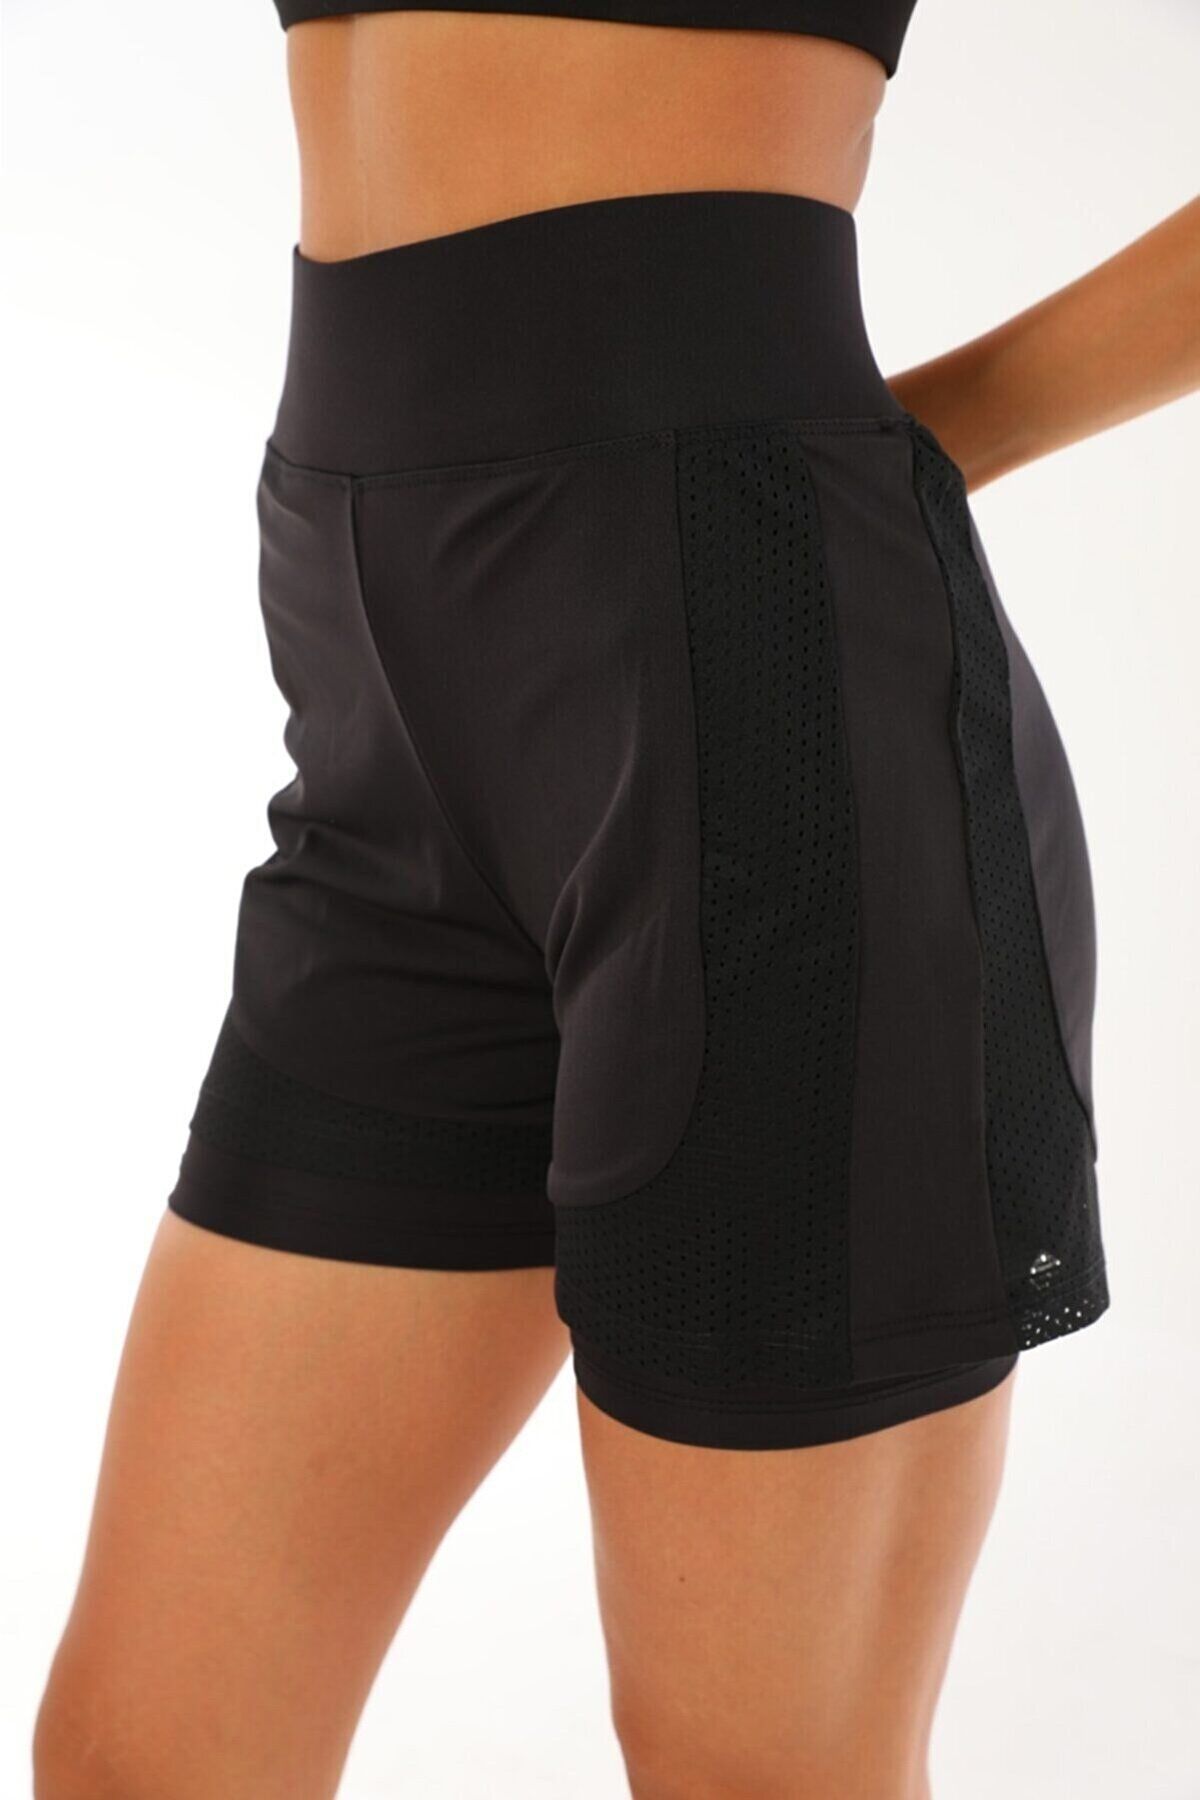 winmoda Women's Sports Shorts 2 Pockets - Trendyol